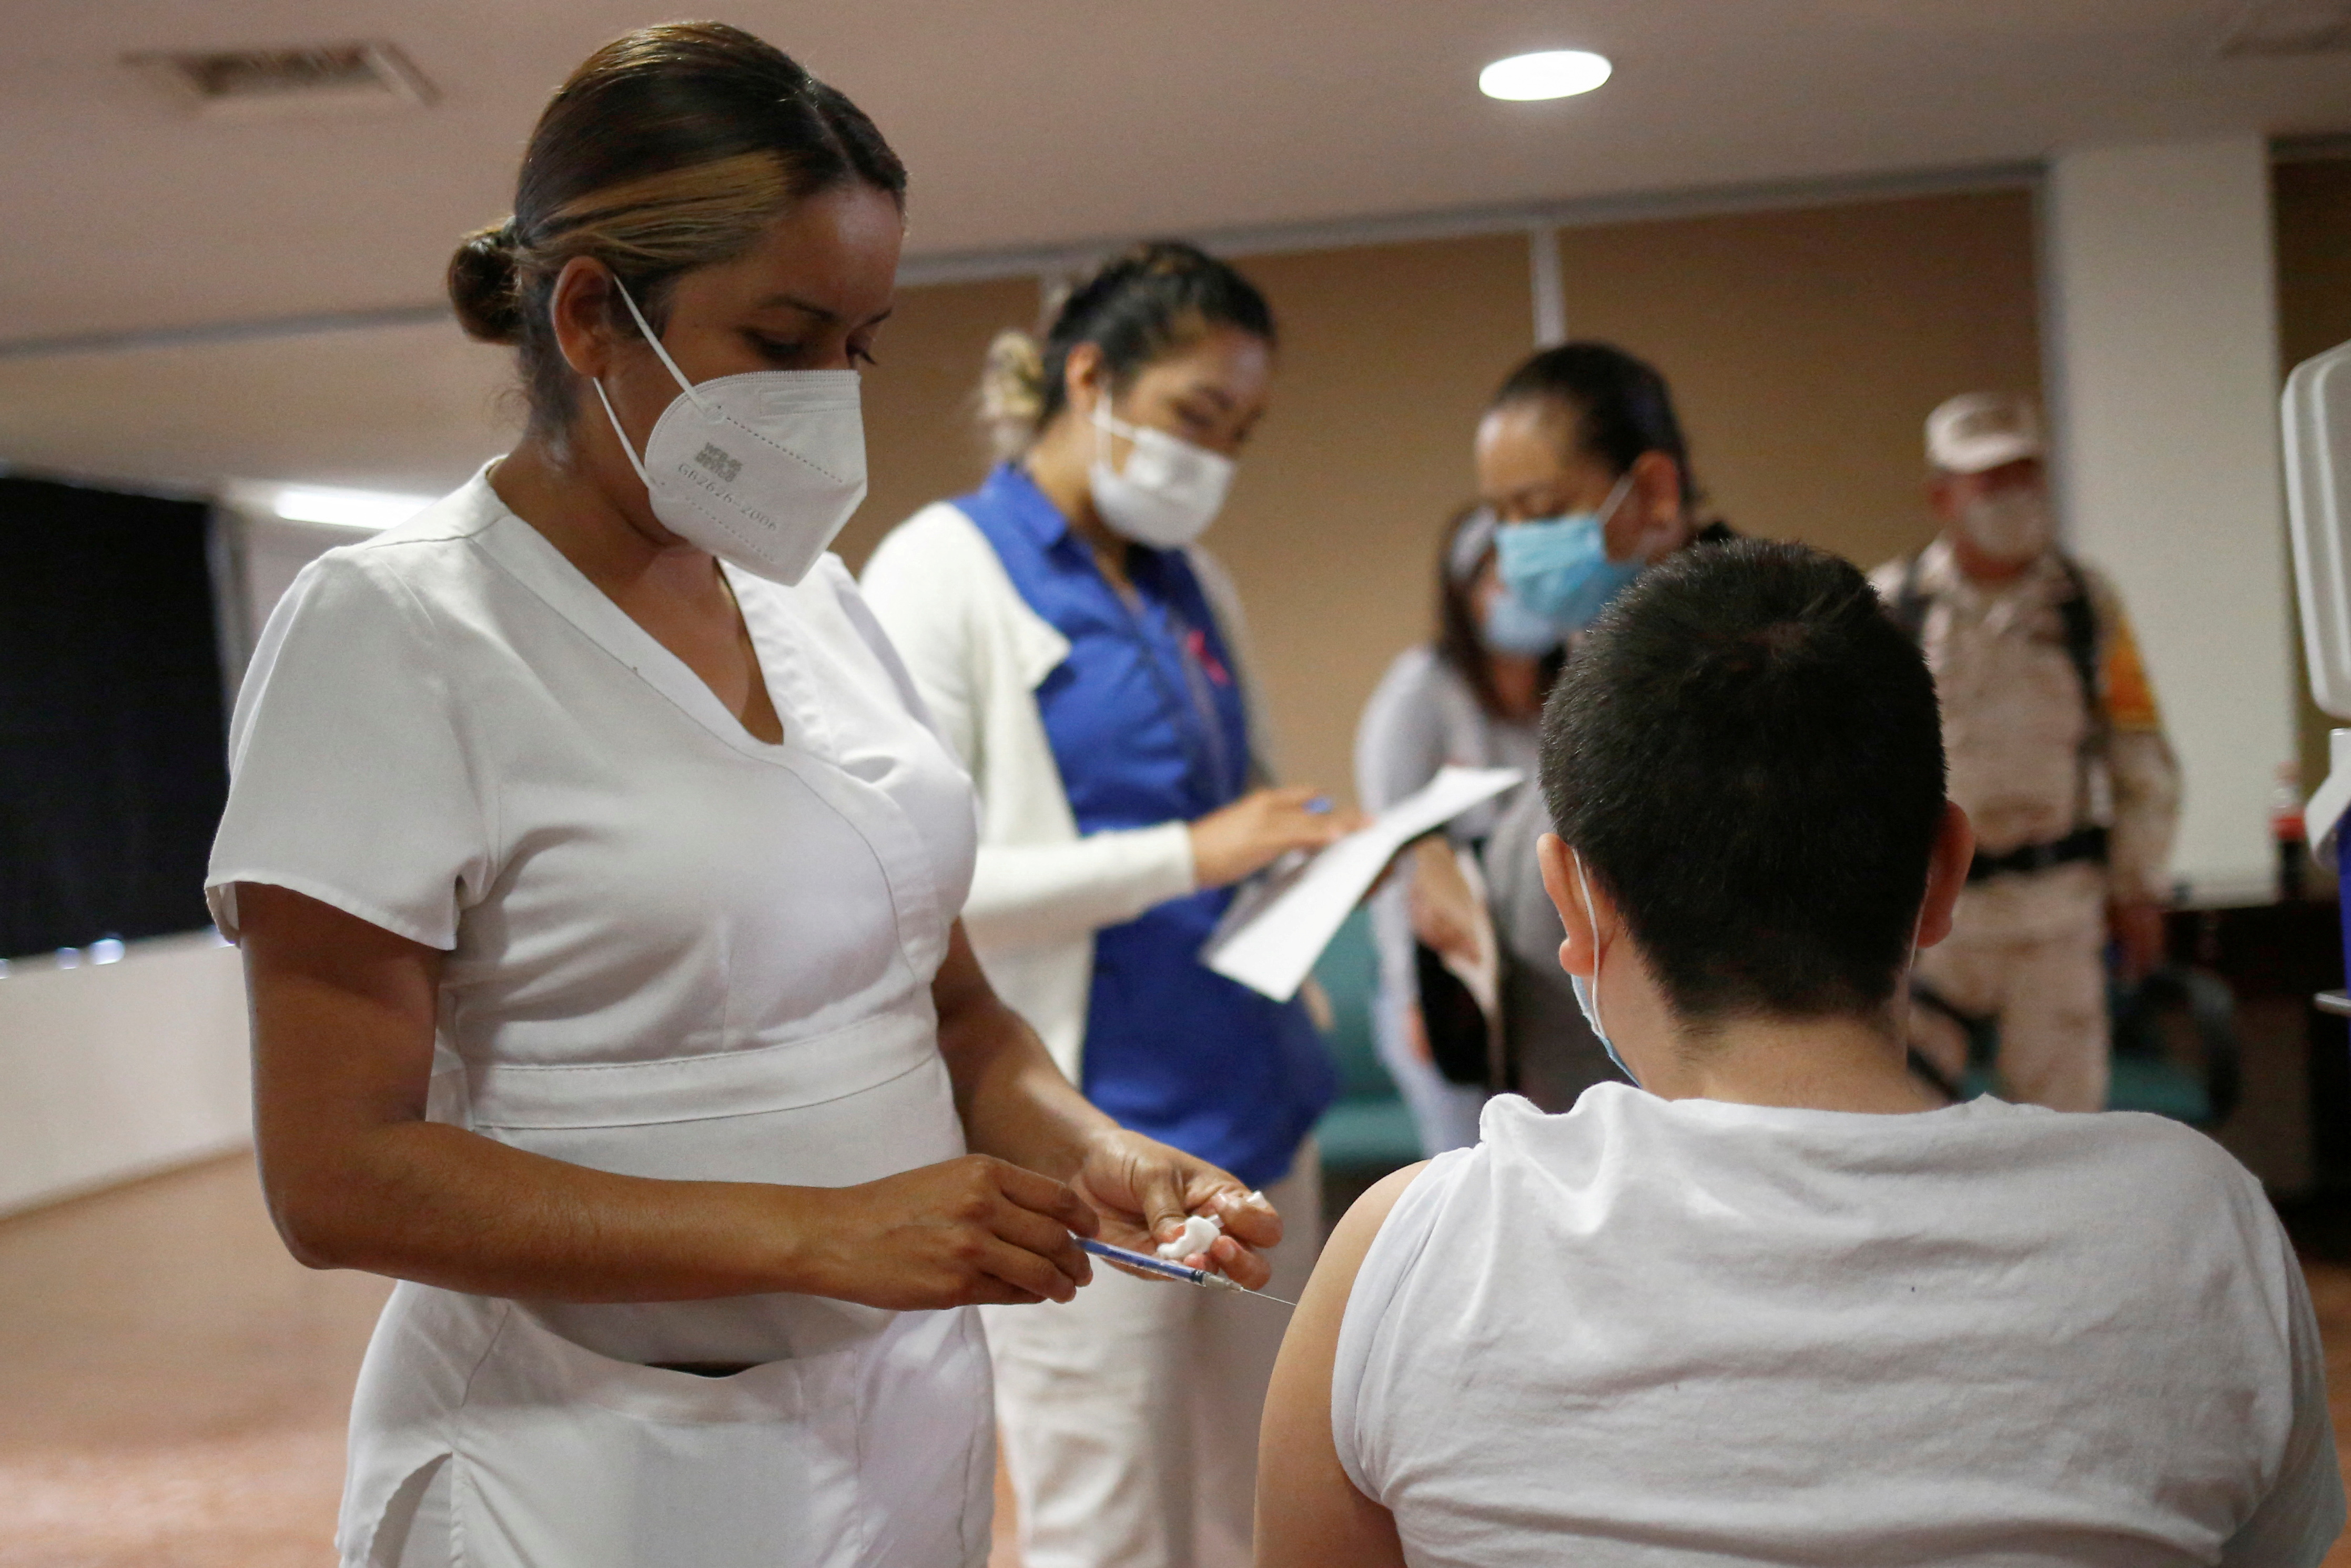 Children receive vaccination against the coronavirus disease (COVID-19) in Ciudad Juarez